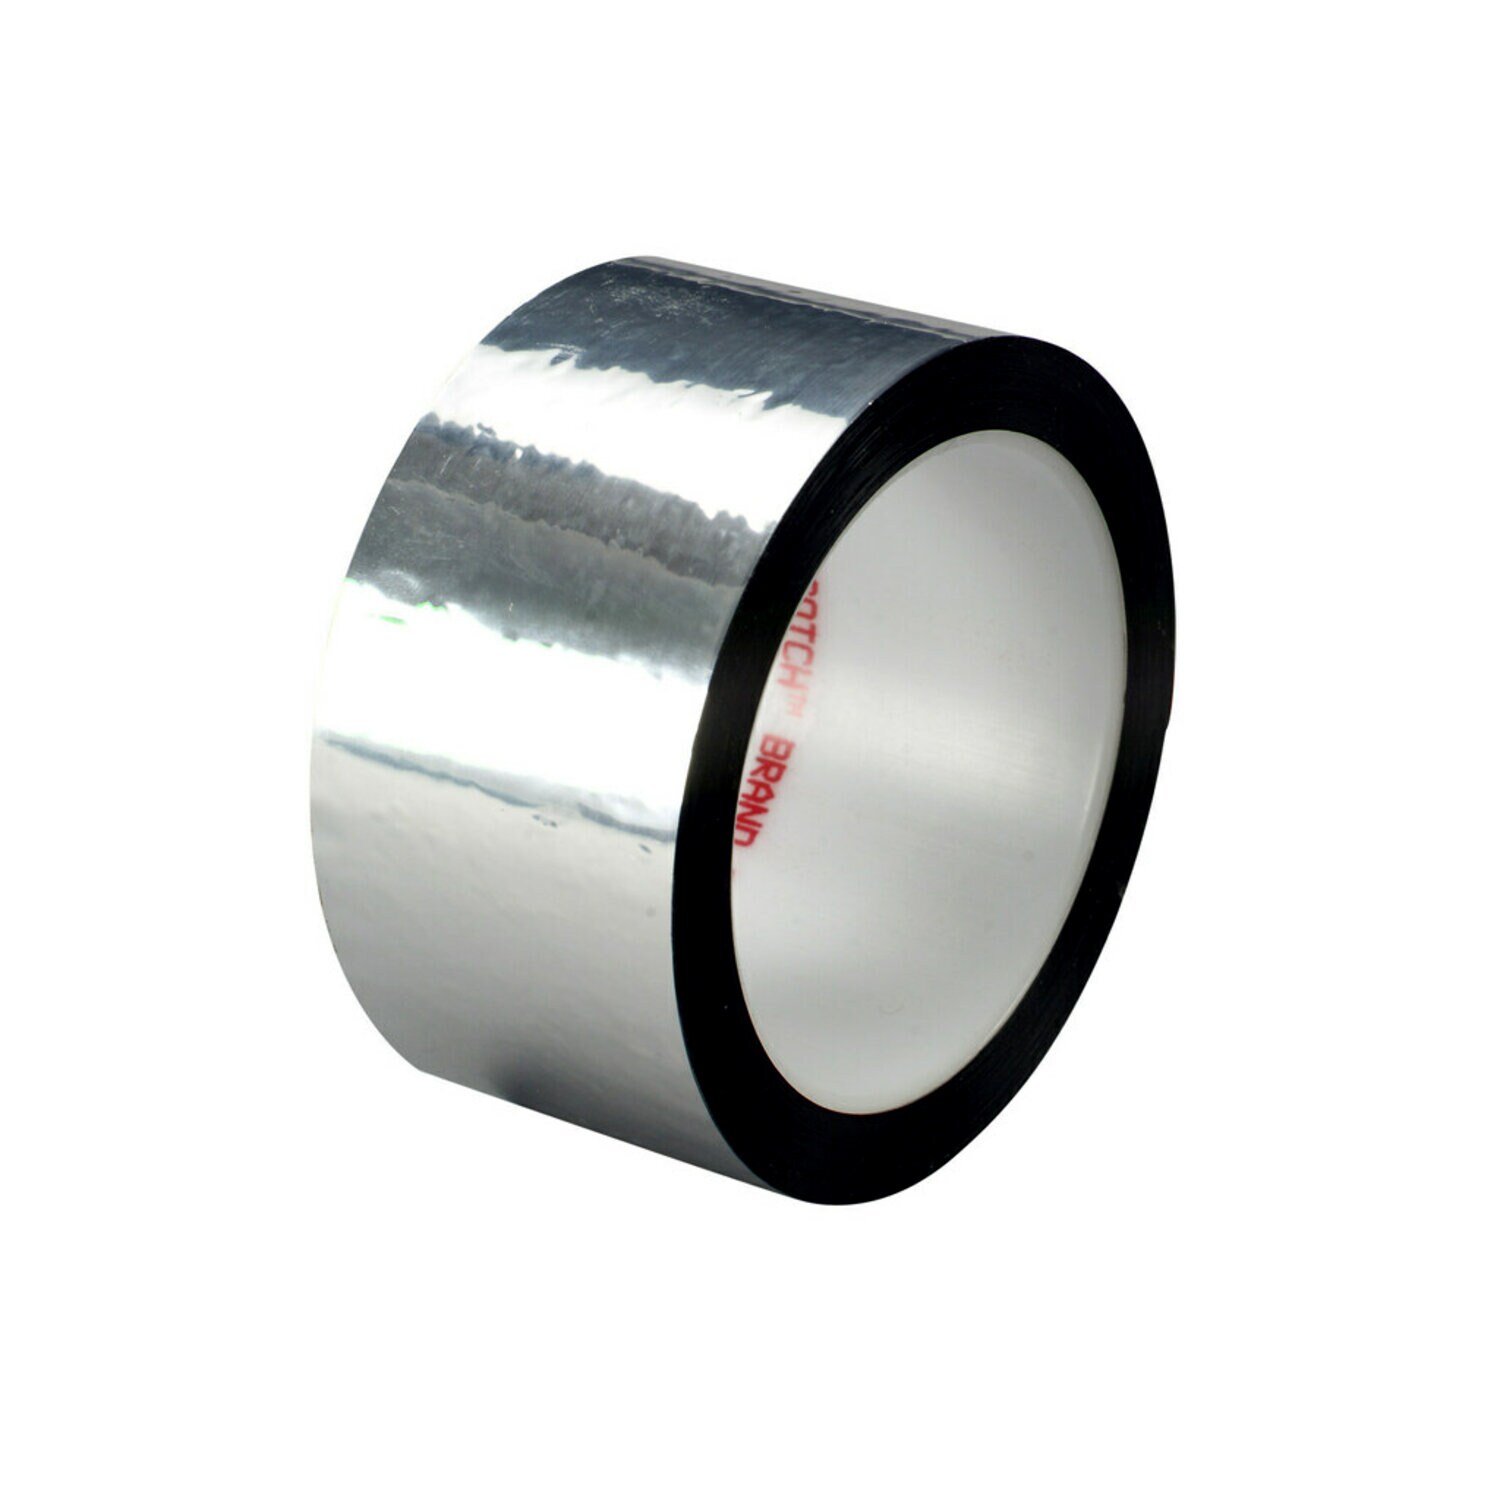 Pack-n-Tape  3M 425 Aluminum Foil Tape Silver, 2 in x 60 yd 4.6 mil, 24  rolls per case Bulk